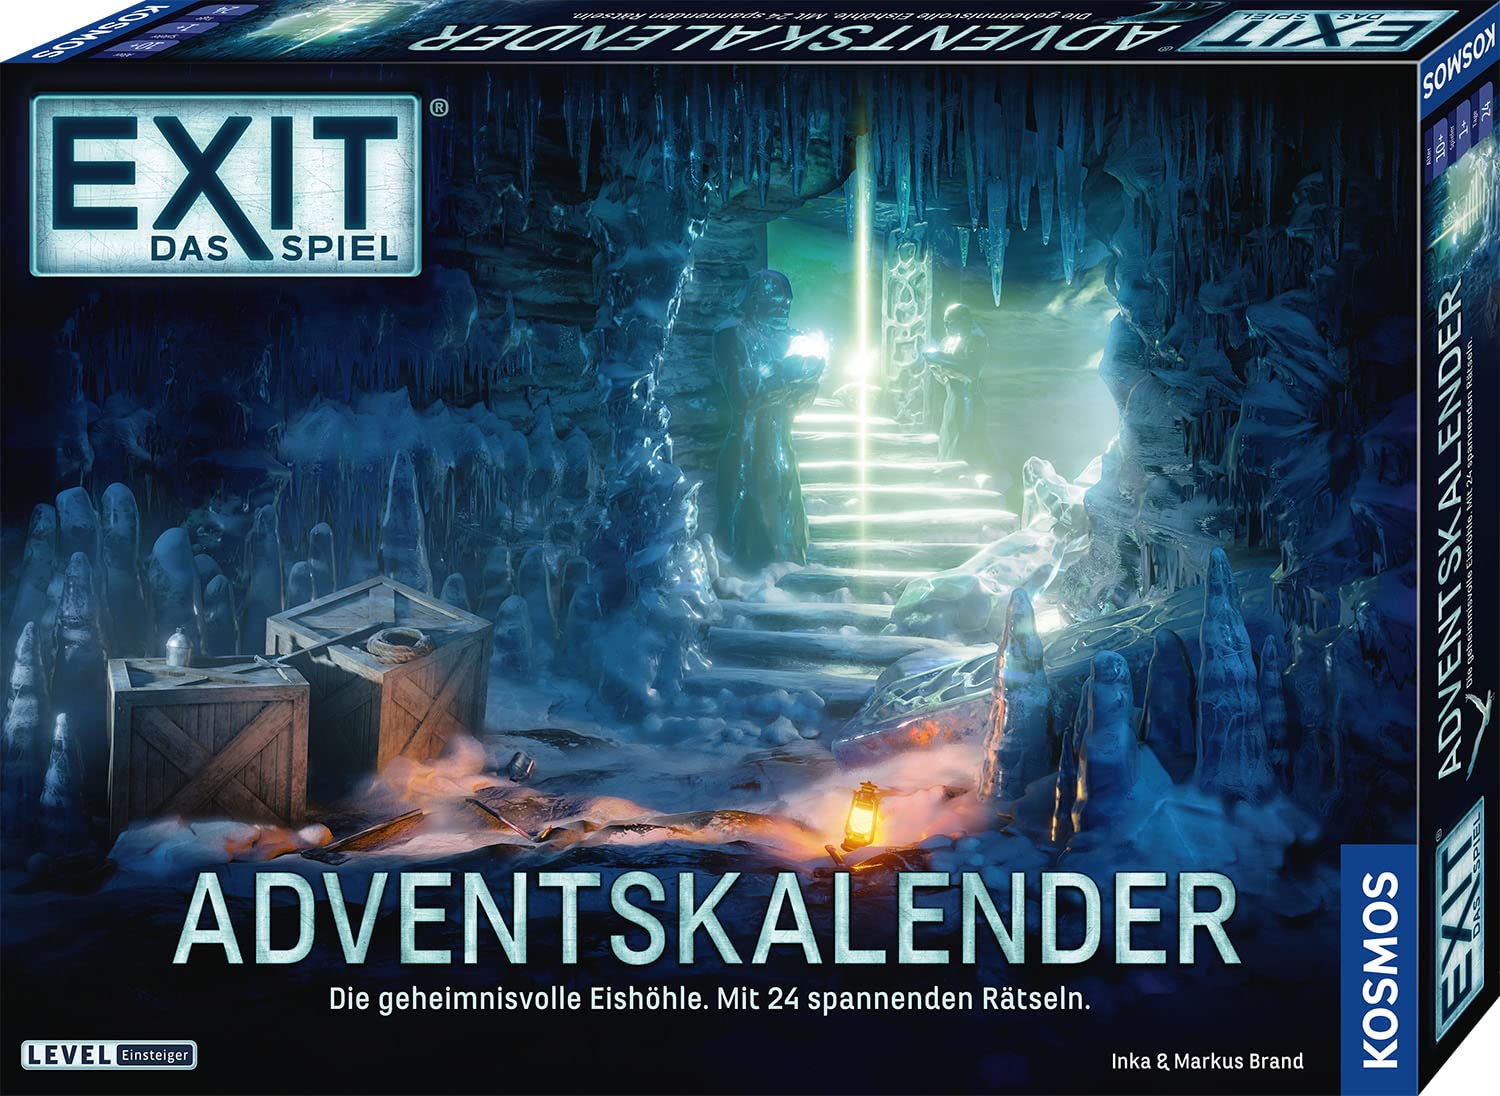 KOSMOS 693206 EXIT® - Das Spiel Adventskalender 2020 Die geheimnisvolle Eishöhle, mit 24 spannenden Rätseln ab 10 Jahre, Escape Room Spiel vor Weihnachten